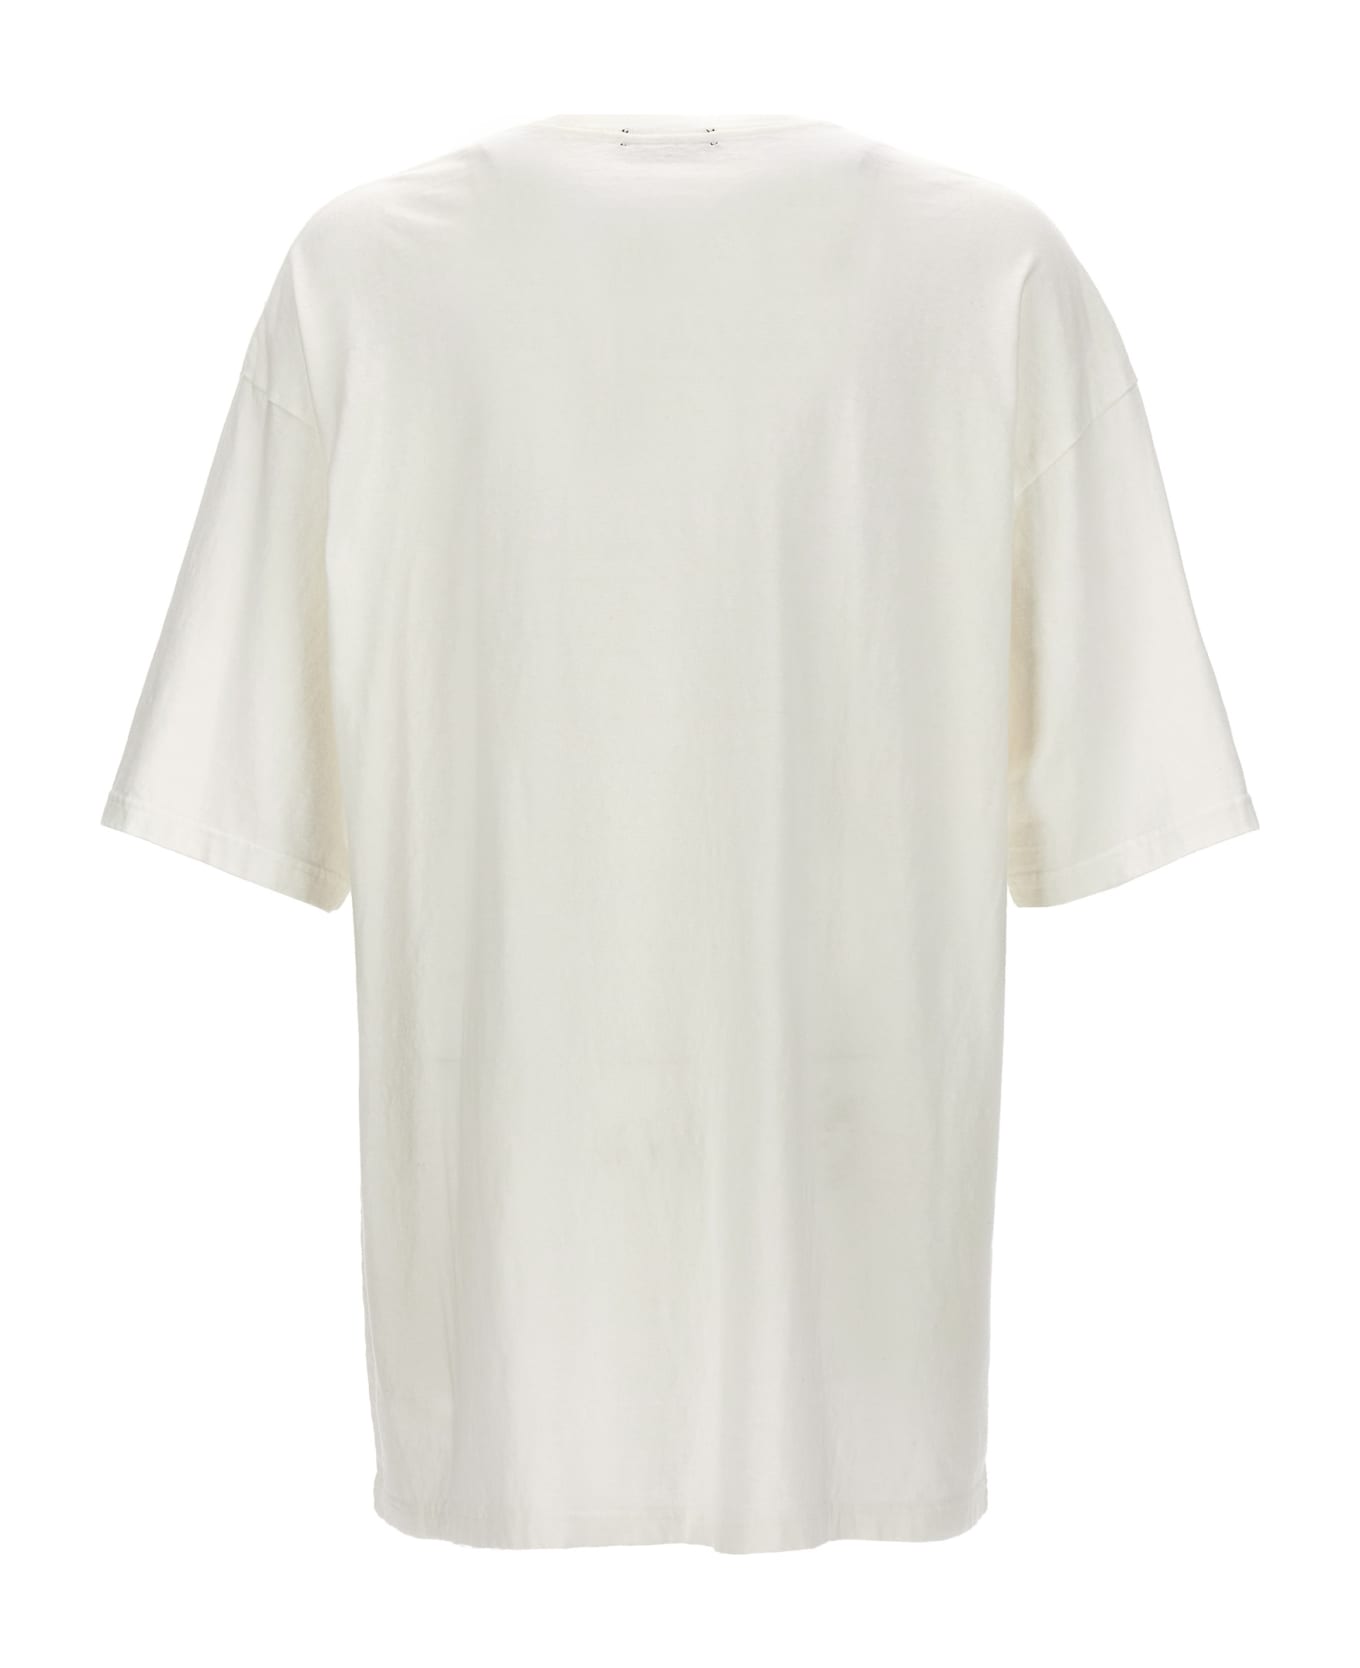 Undercover Jun Takahashi Printed T-shirt - White